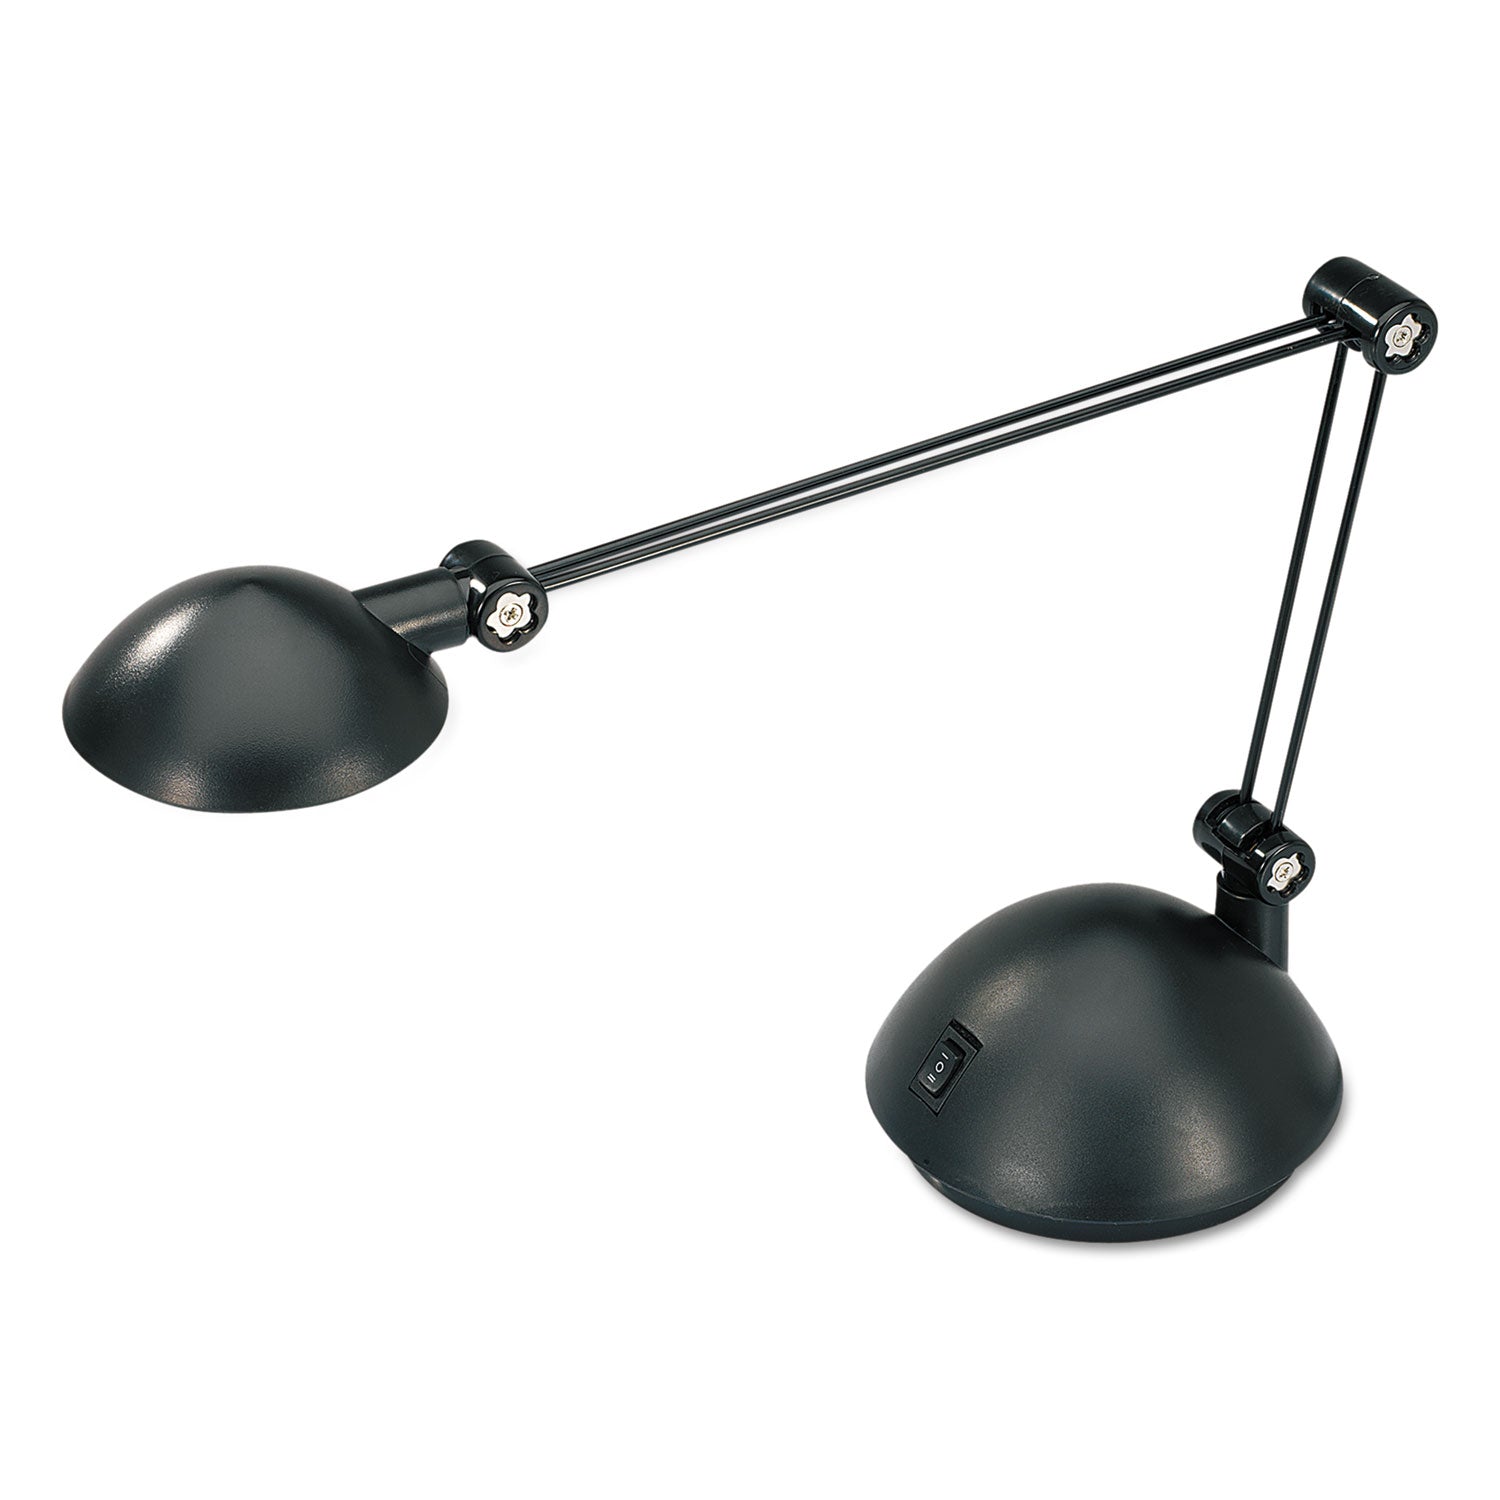 twin-arm-task-led-lamp-with-usb-port-1188w-x-513d-x-185h-black_aleled912b - 3